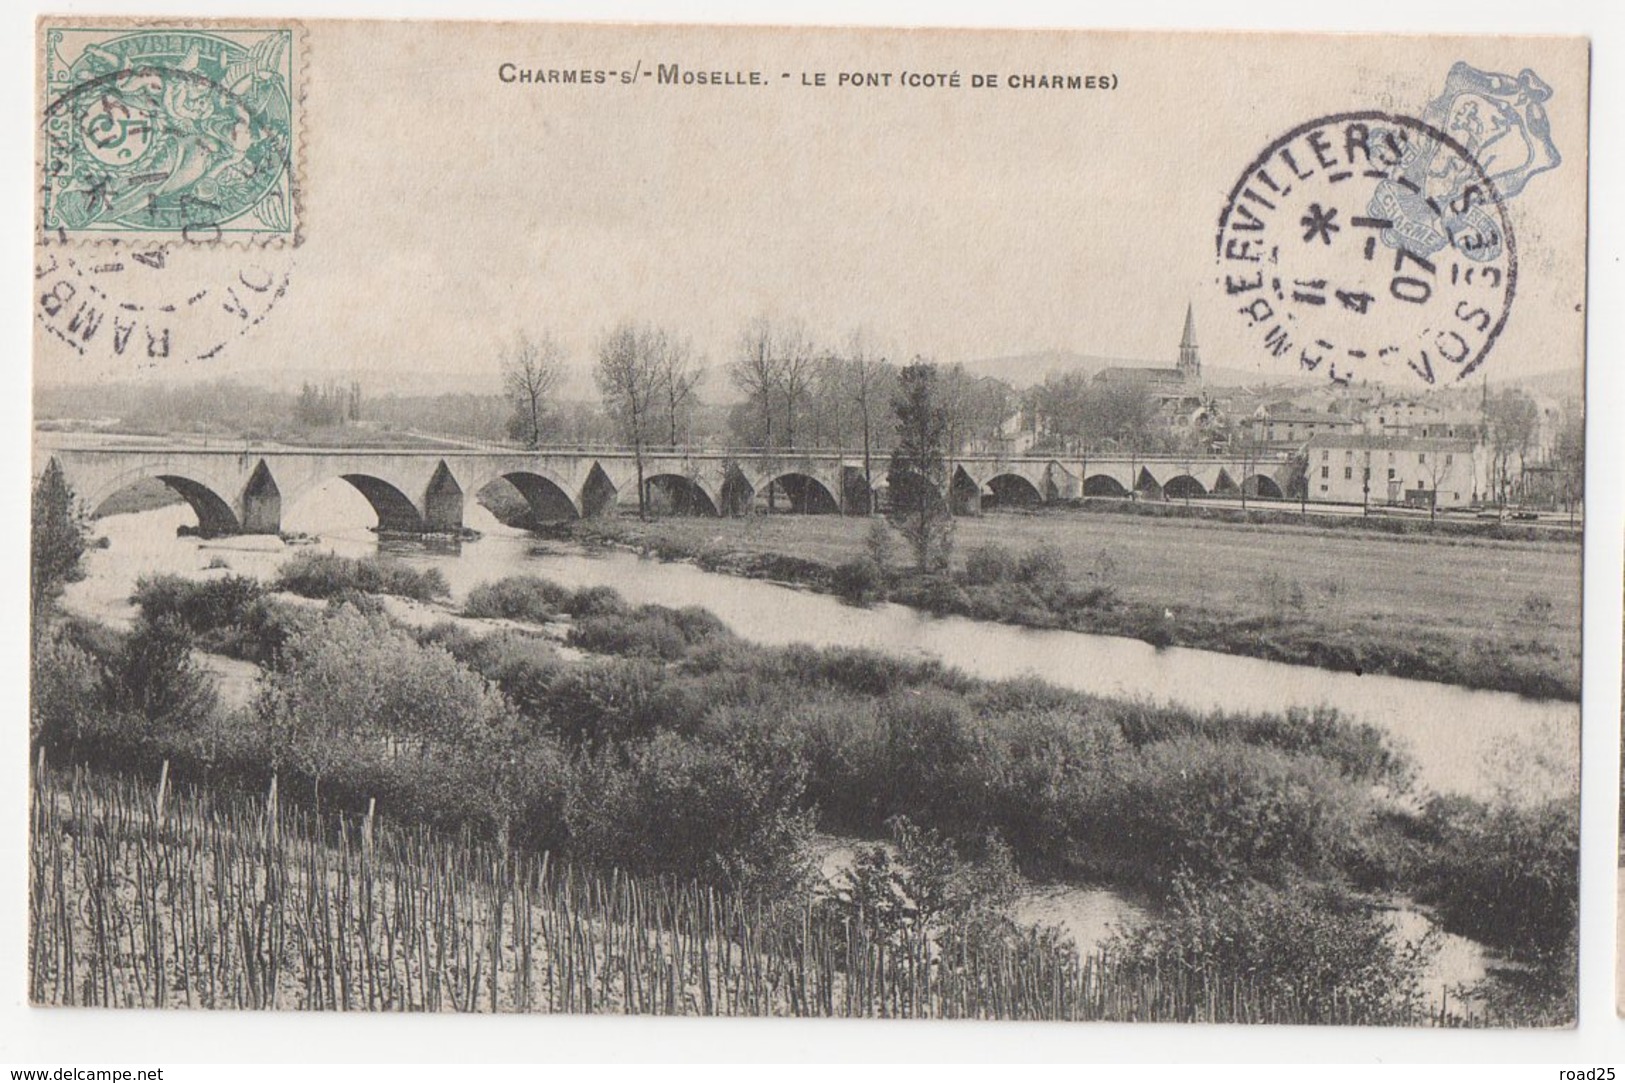 ( 88 ) Lot de 43 cartes postales anciennes du département des Vosges